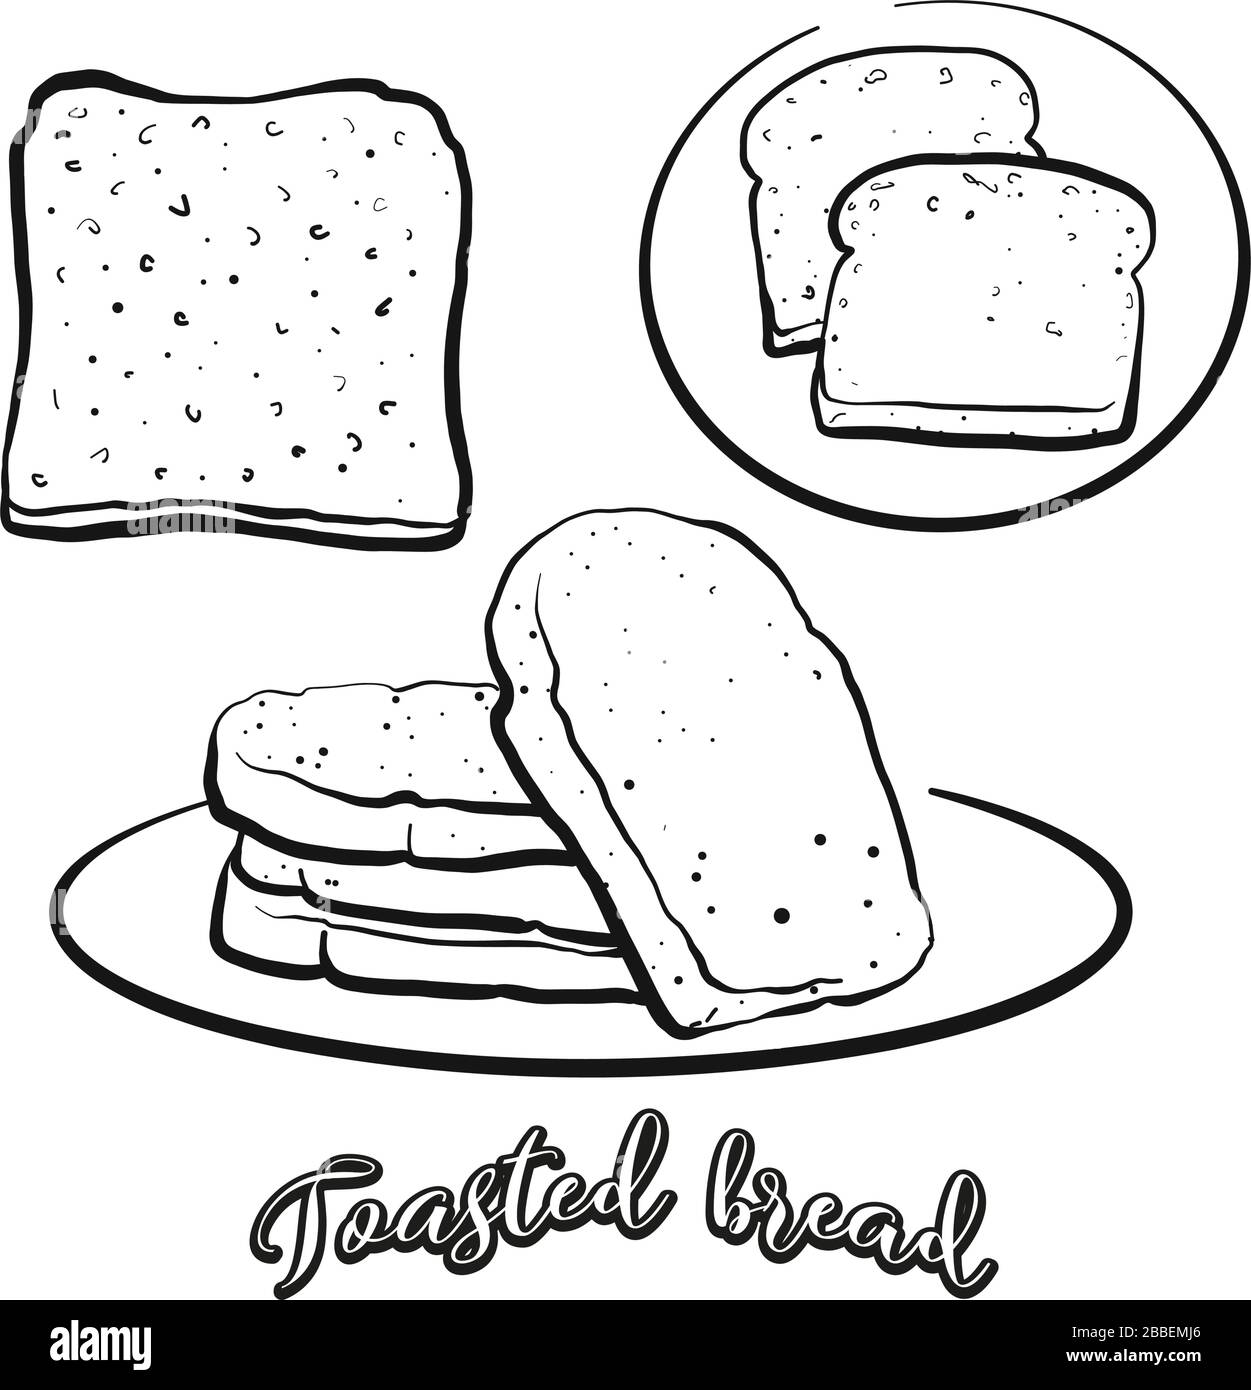 Lo schizzo del pane tostato si separa su bianco. Disegno vettoriale di pane tostato, di solito noto in Gran Bretagna. Serie di illustrazioni alimentari. Illustrazione Vettoriale